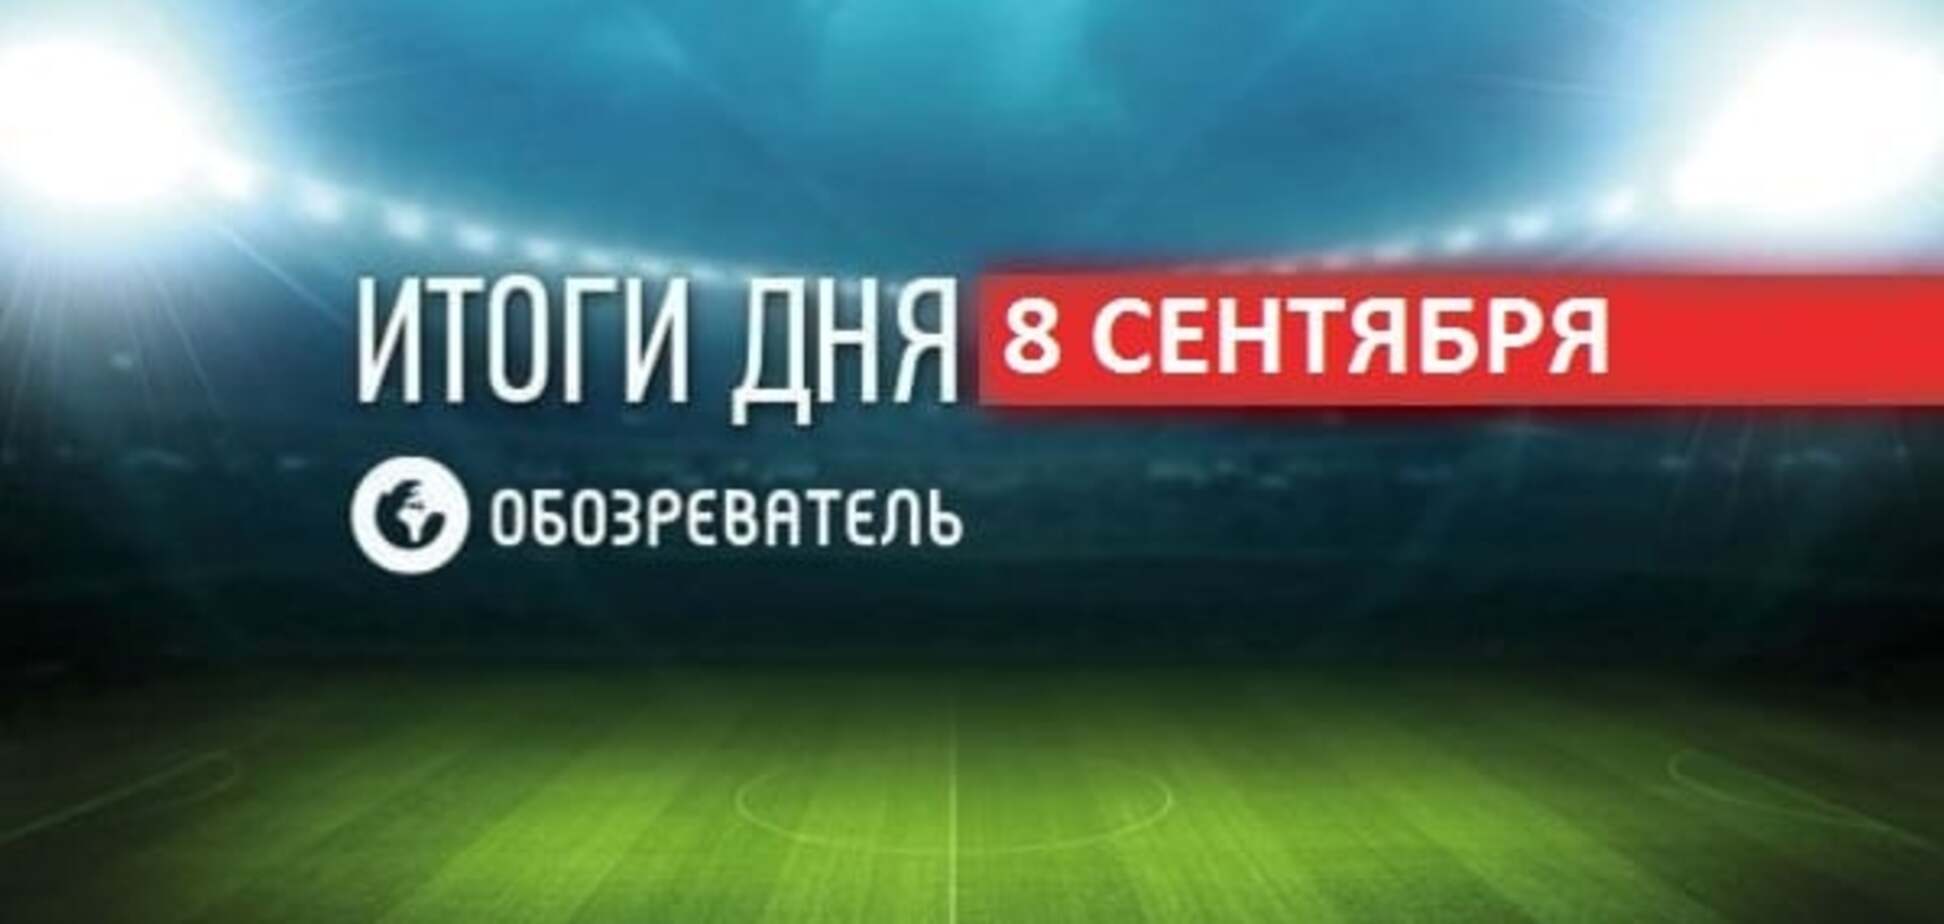 Паралимпиада началась со скандала с флагом РФ: спортивные итоги 8 сентября